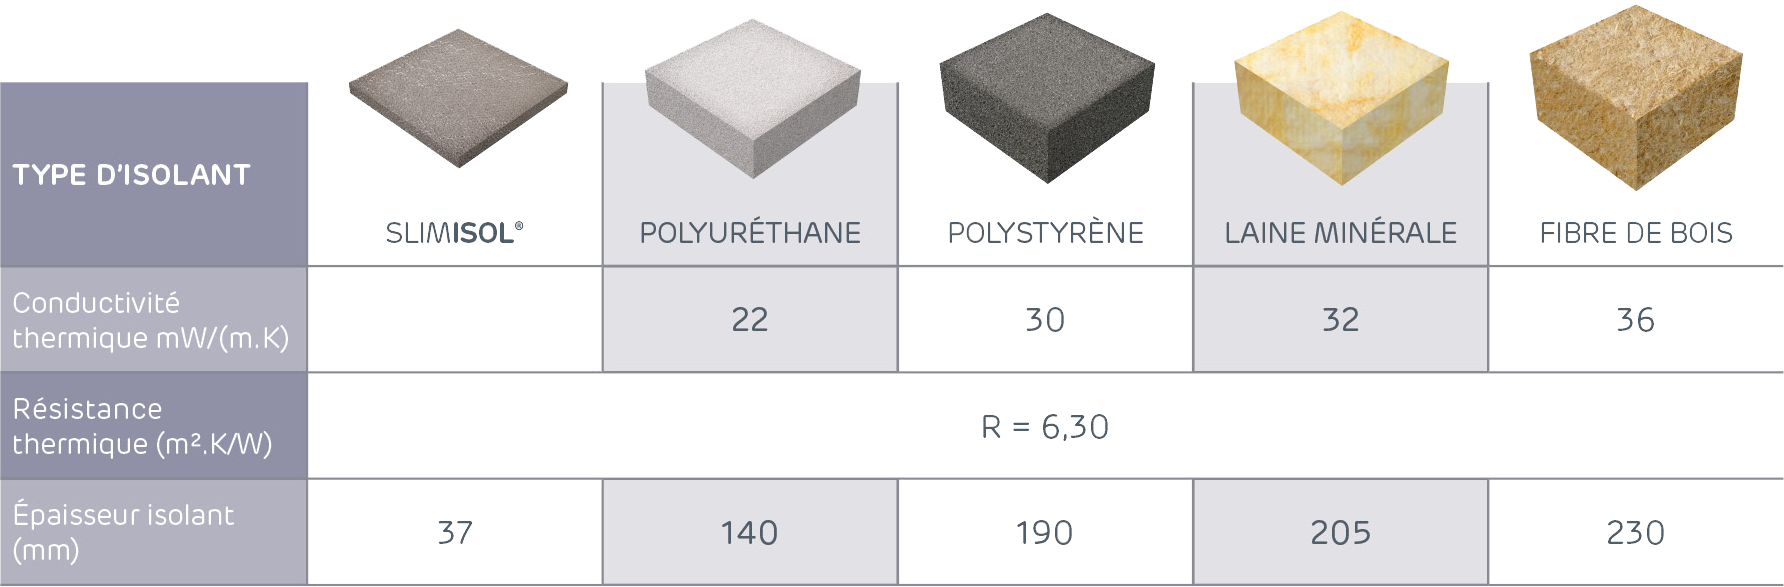 Comparaison des épaisseurs d'isolants pour une résistance thermique de 6,3m².K/W : SLMISOL (37mm), polyuréthane (140mm), polystyrène (190mm), laine minérale (205mm) et fibre de bois (230mm)